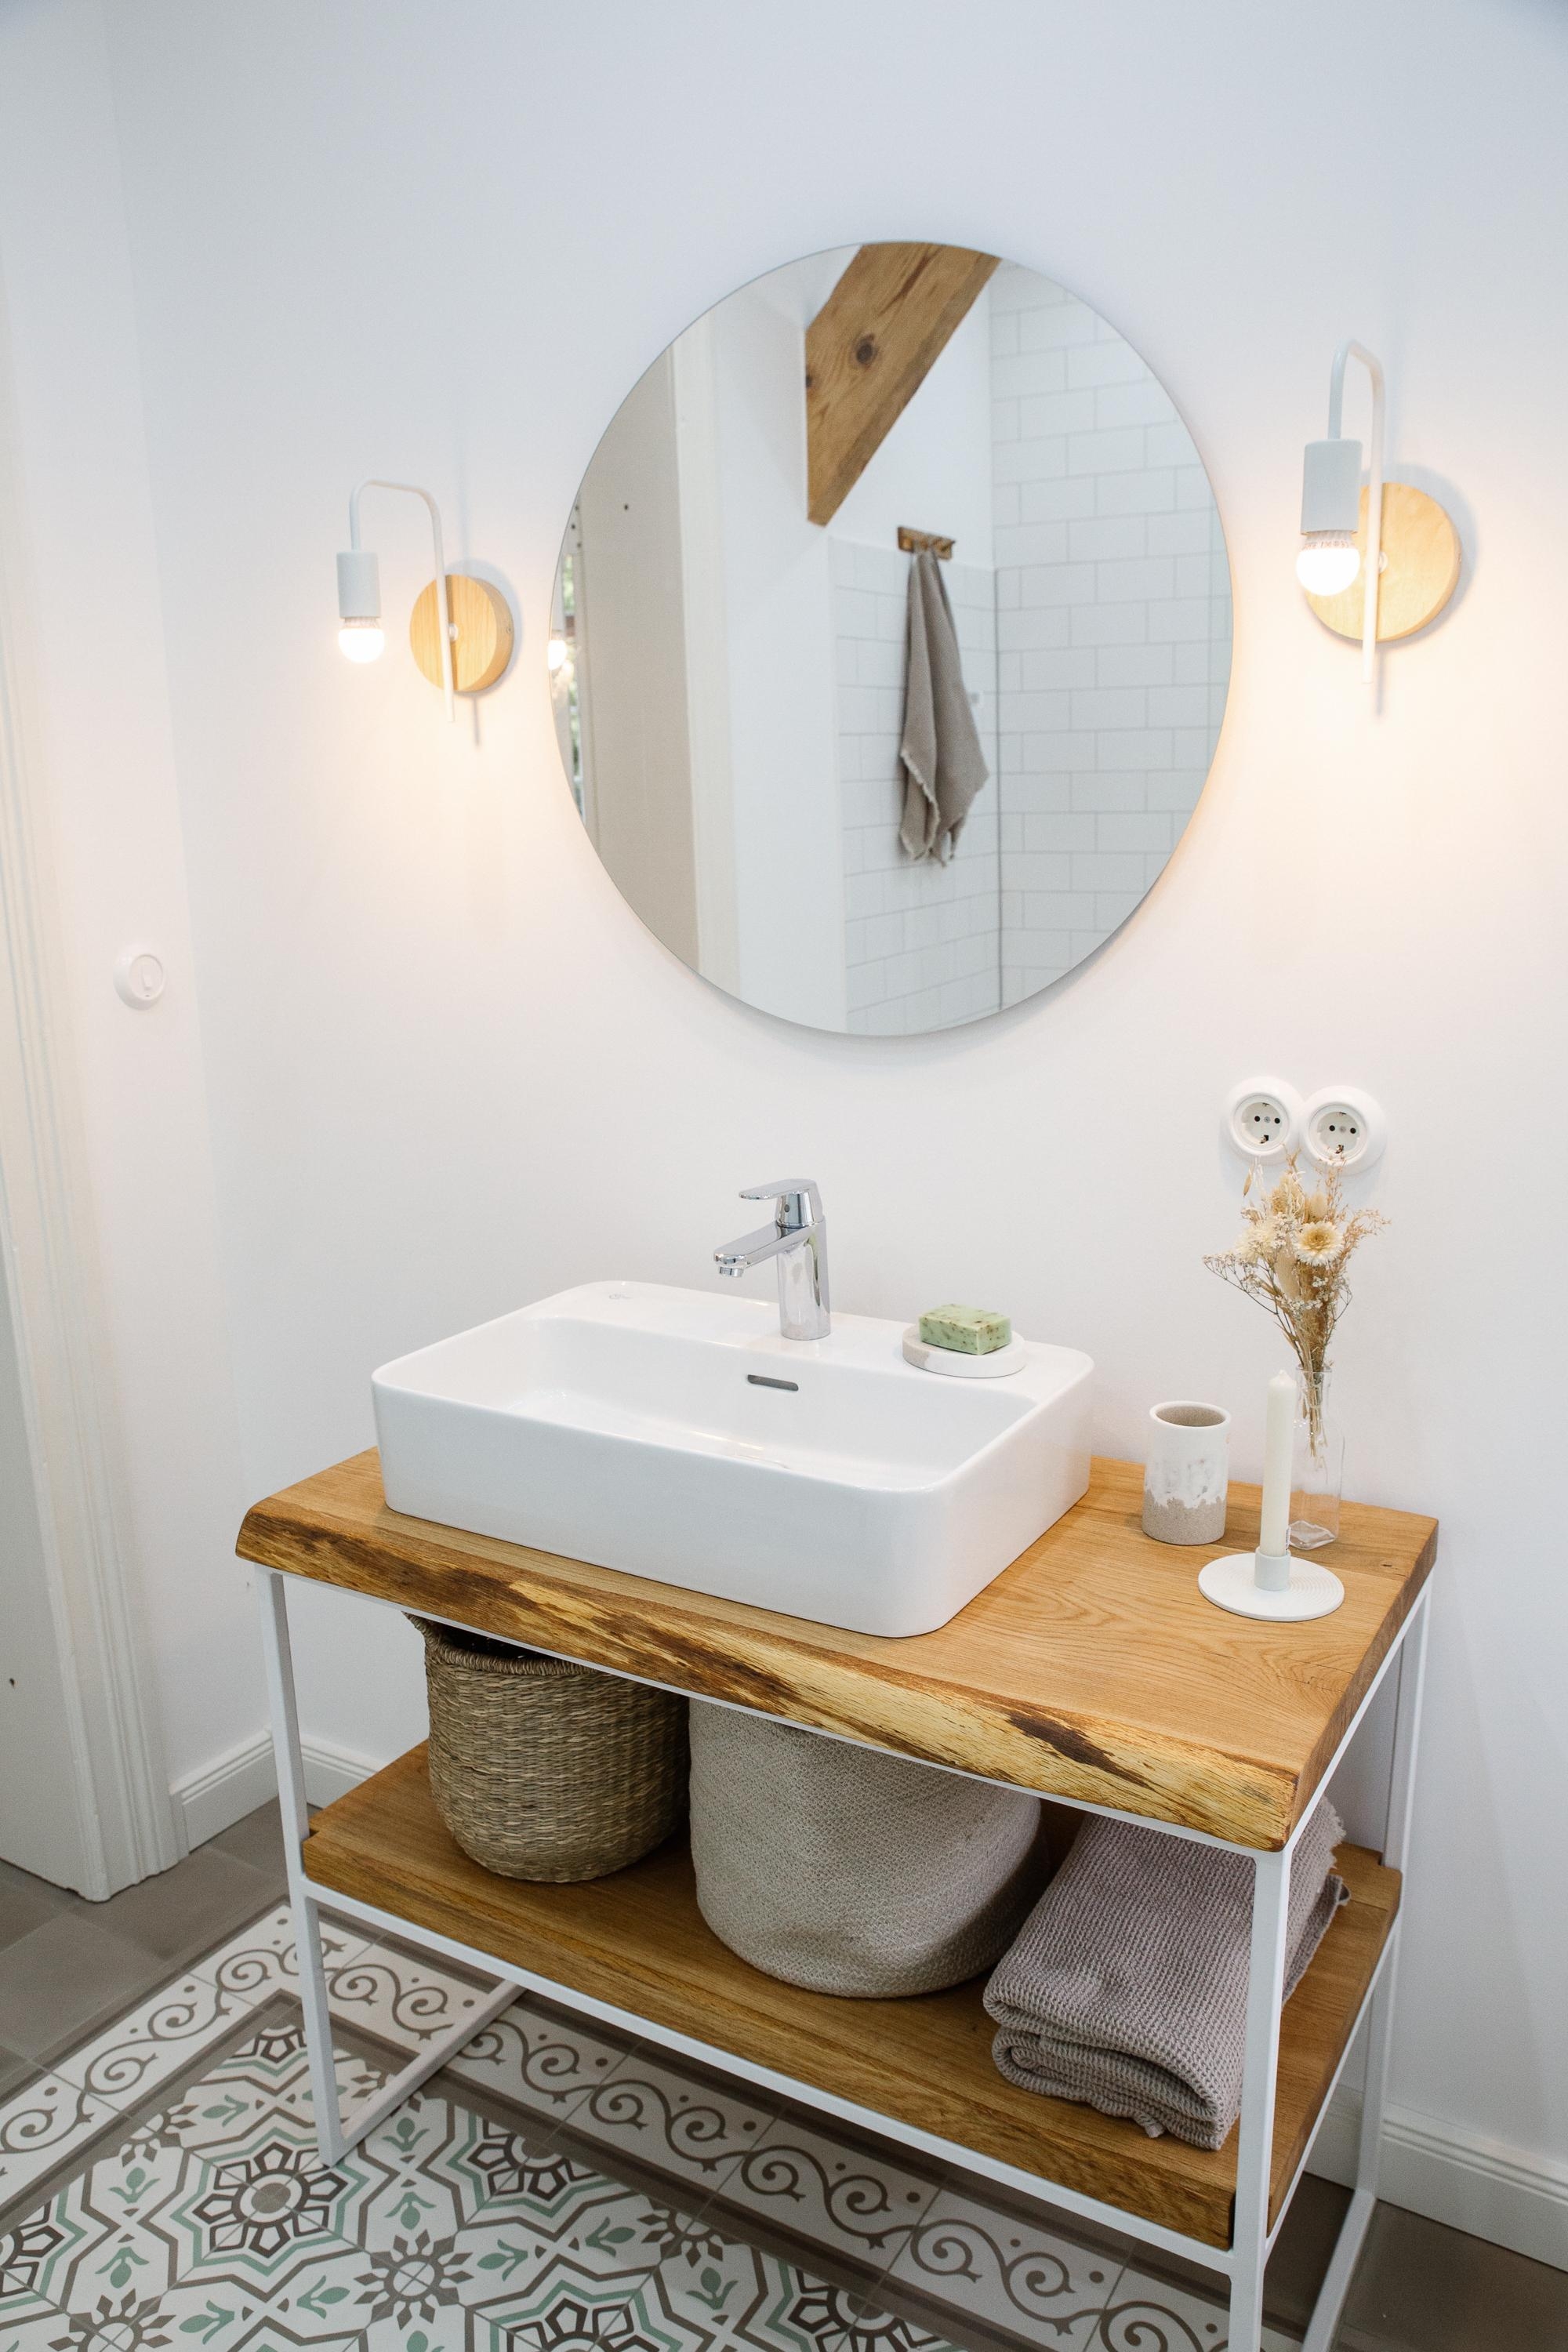 Endlich ist unser wundervolles Gästebadezimmer fertig 🖤
#zementfliesen #badezimmer 